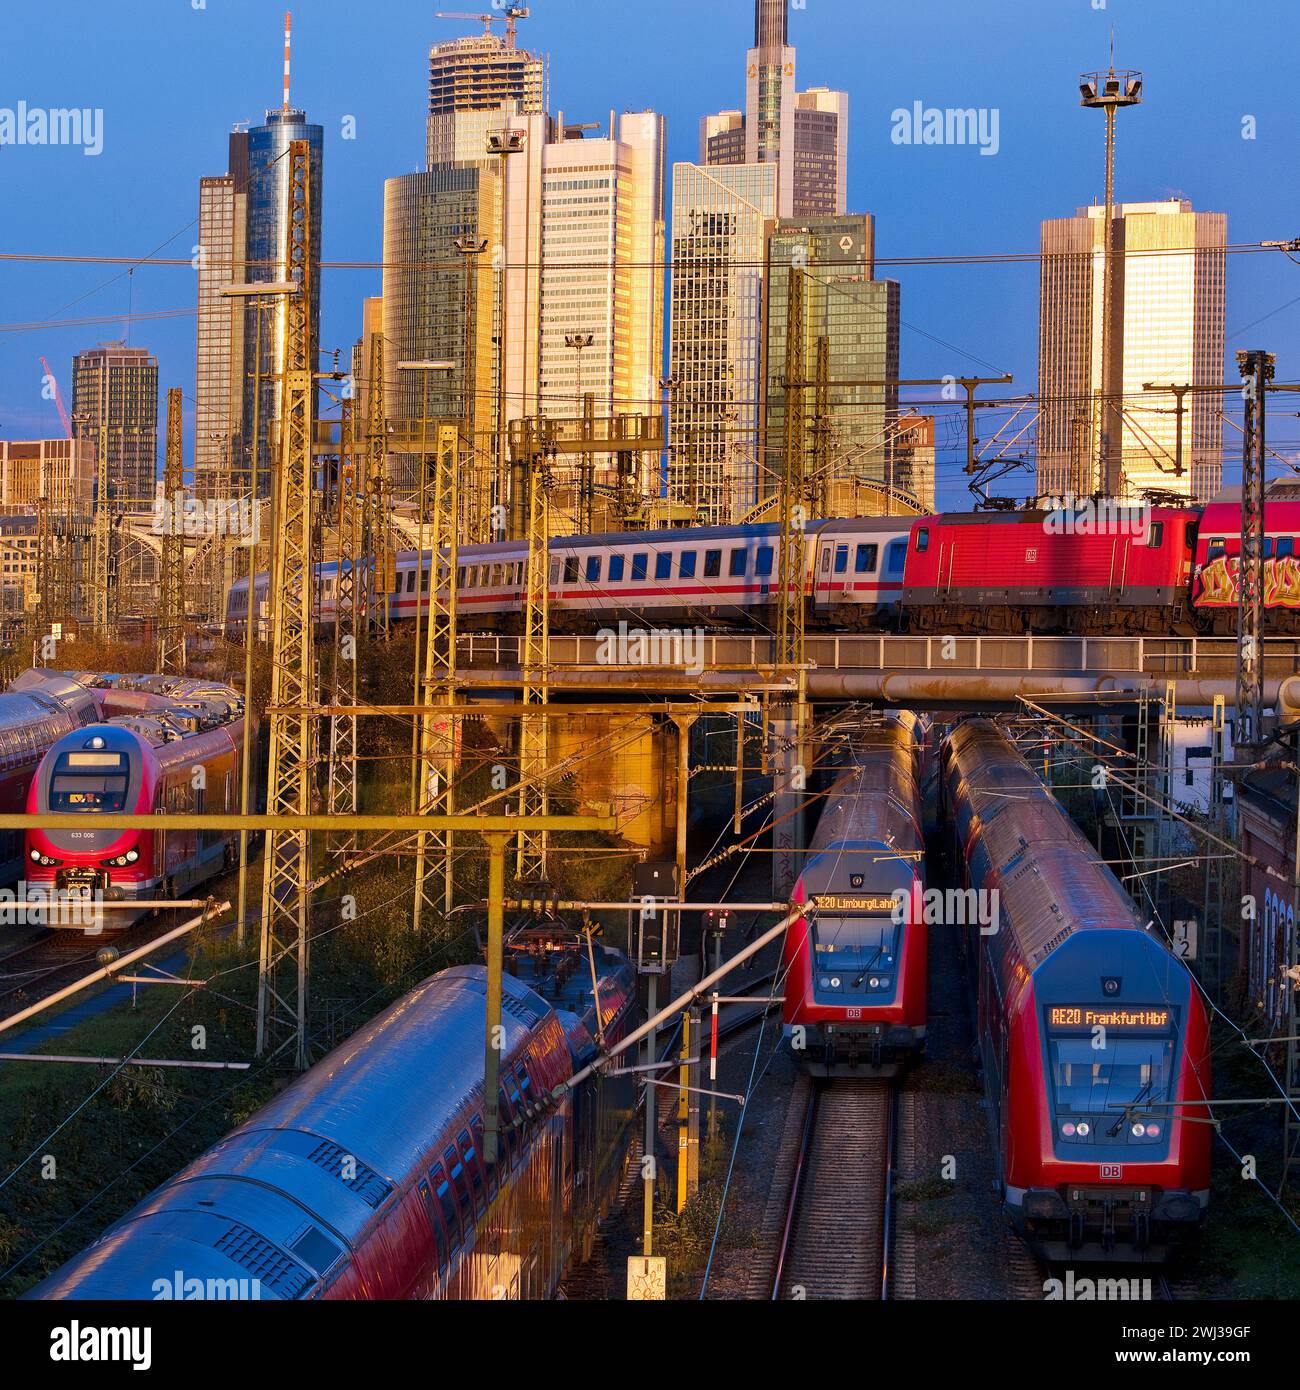 Stadtblick mit vielen Zügen, Hauptbahnhof und Hochhäusern, Frankfurt am Main, Deutschland, Europa Stockfoto